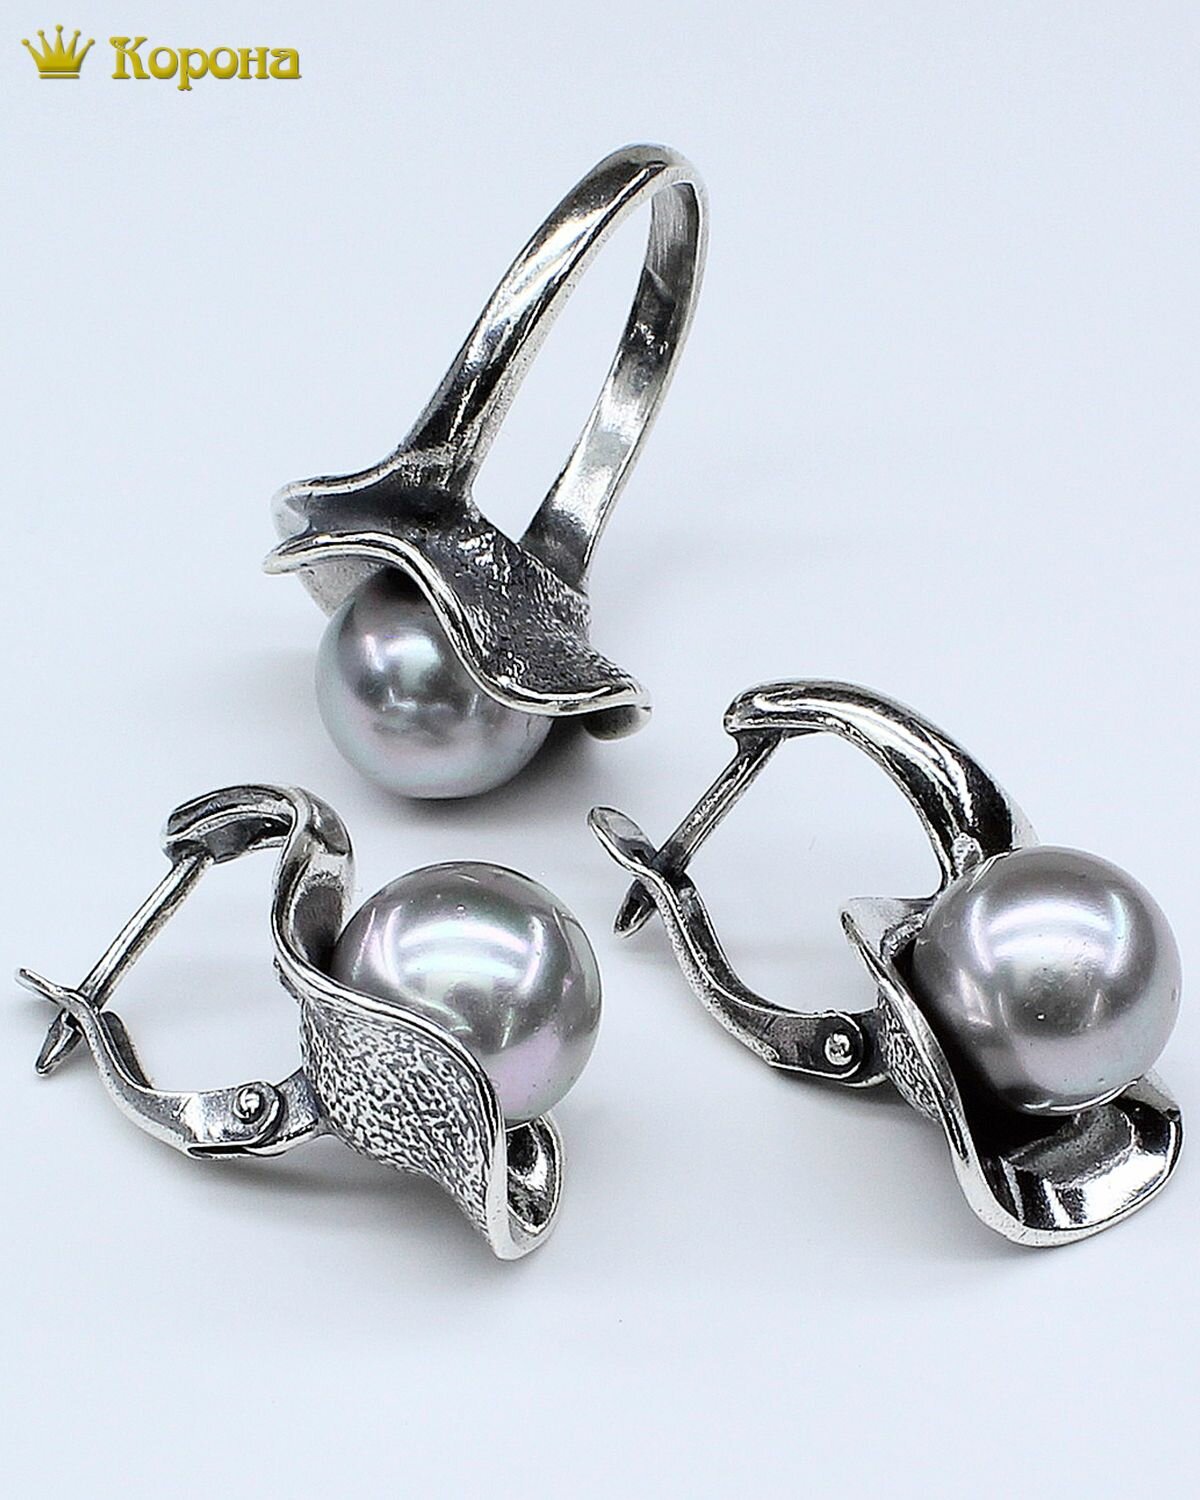 Комплект бижутерии Комплект посеребренных украшений (серьги и кольцо) с майоркой: серьги, кольцо